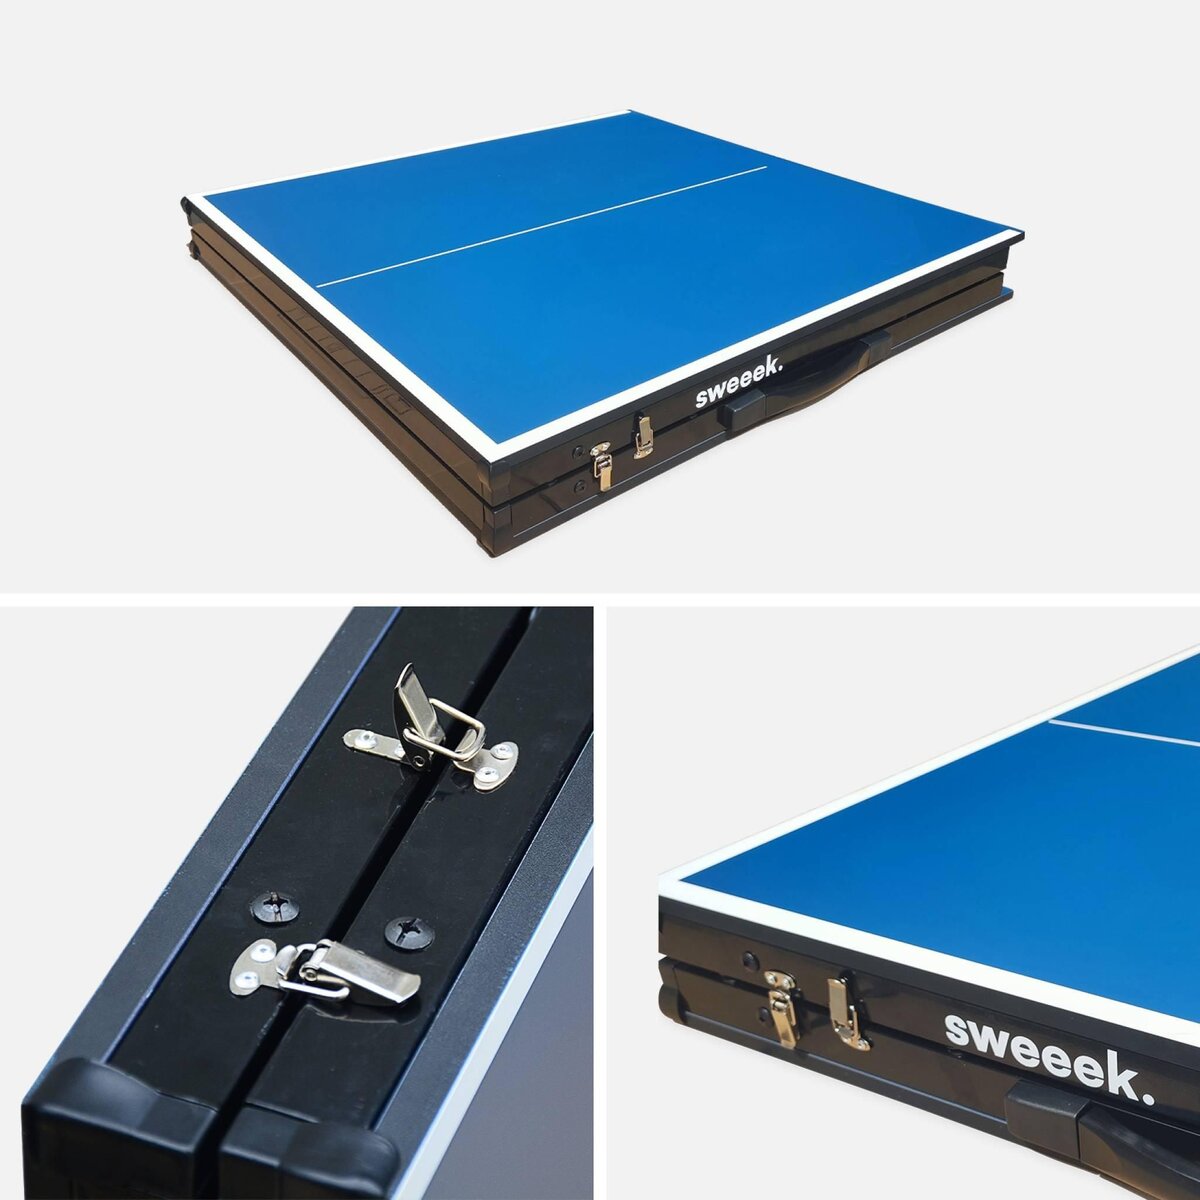 Mini table de ping pong pliable 150x75cm indoor bleue, avec 2 MESA DE PING  PONG